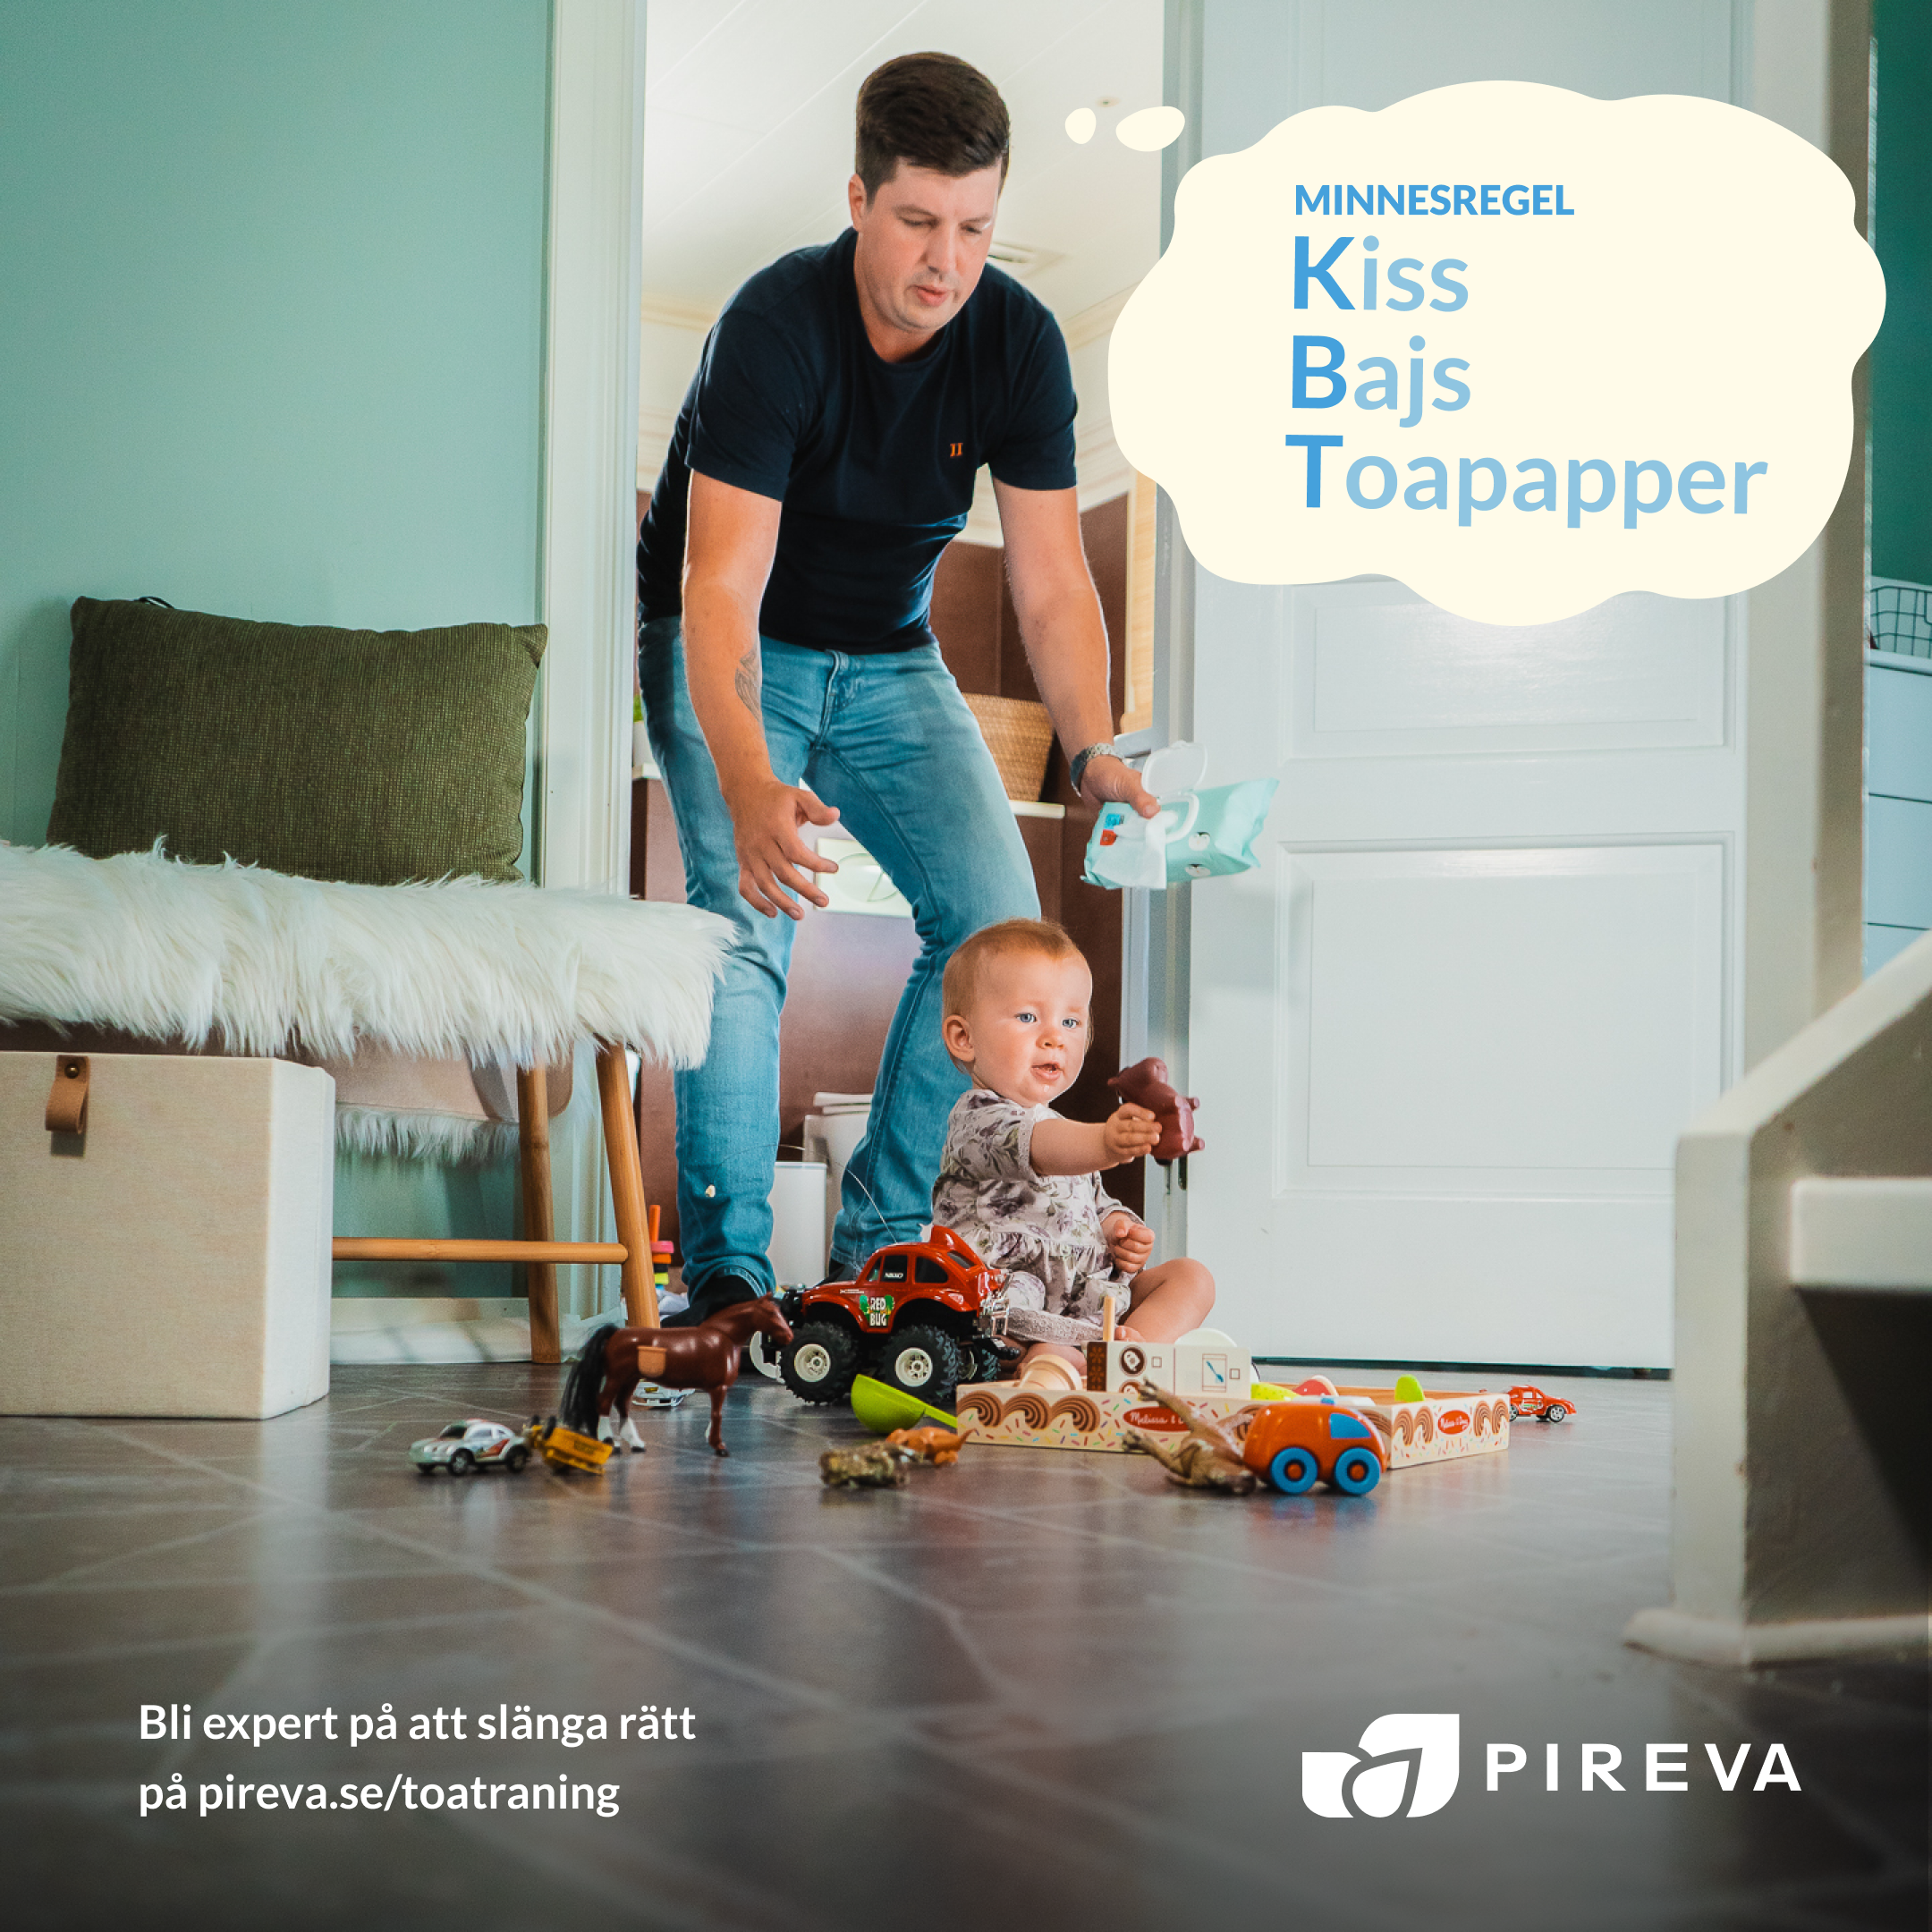 Reklam från Pireva om Toaträning för vuxna. Blöjbyte på bebis och pappa tänker minnesregeln KBT: Kiss, Bajs, Toapapper